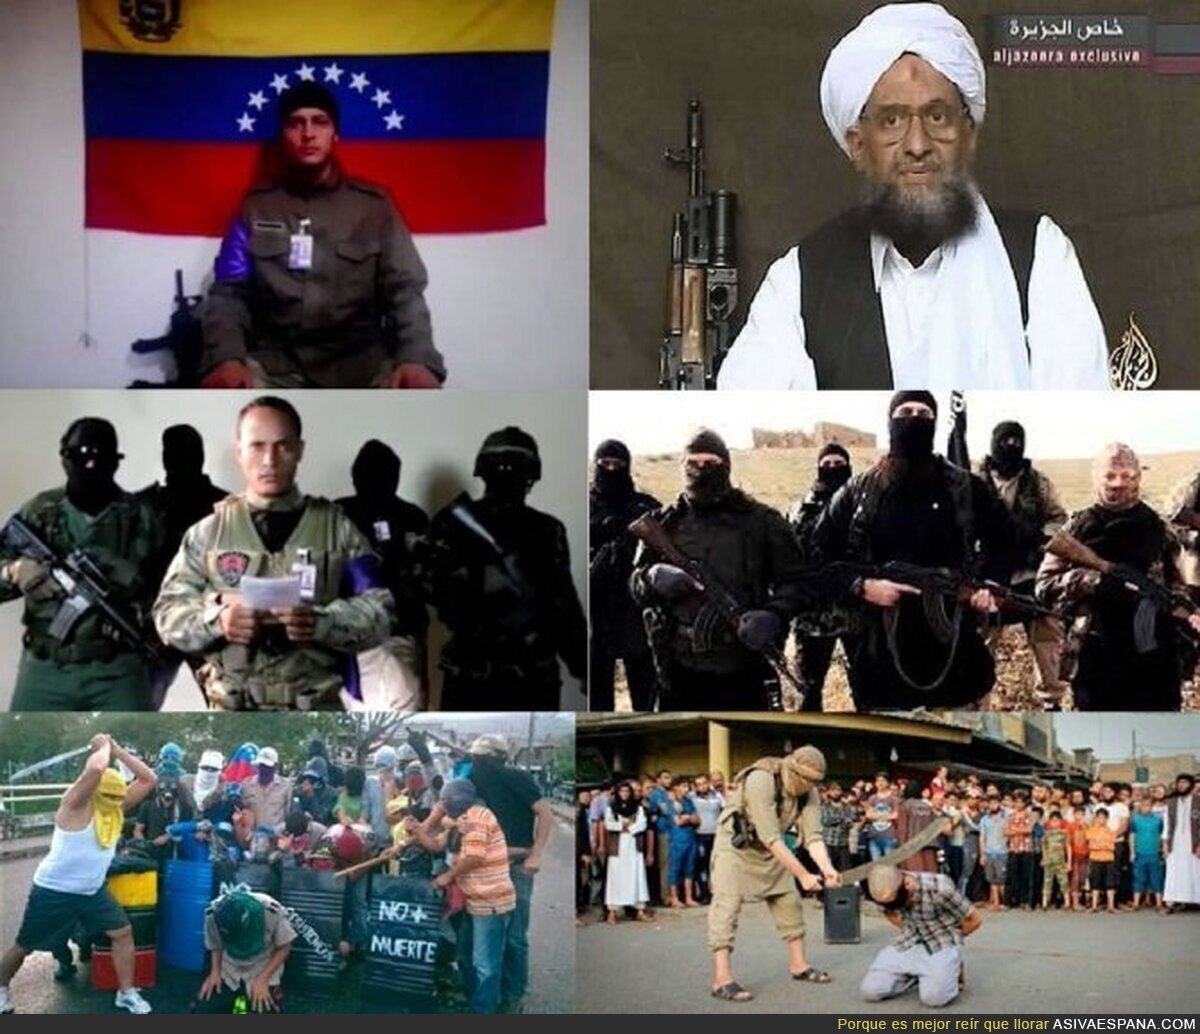 Oposición venezolana vs ISIS, las comparaciones son odiosas...